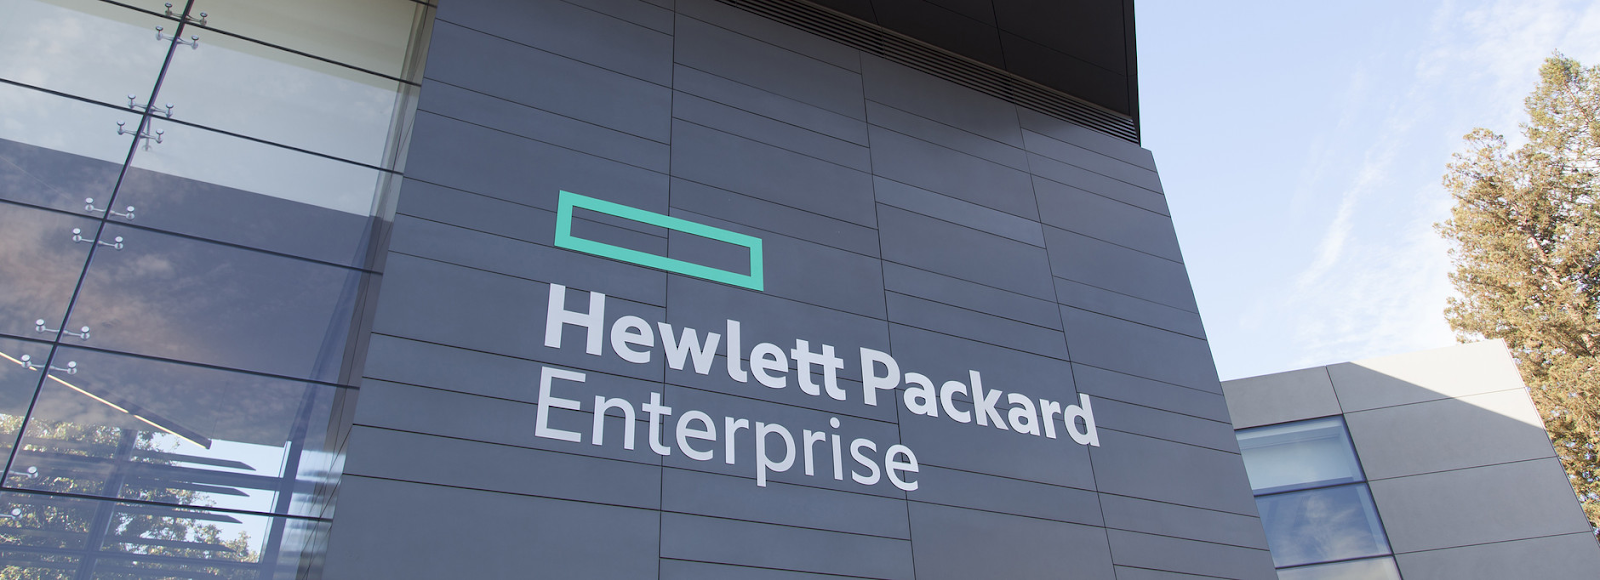 8.Hewlett Packard Enterprise